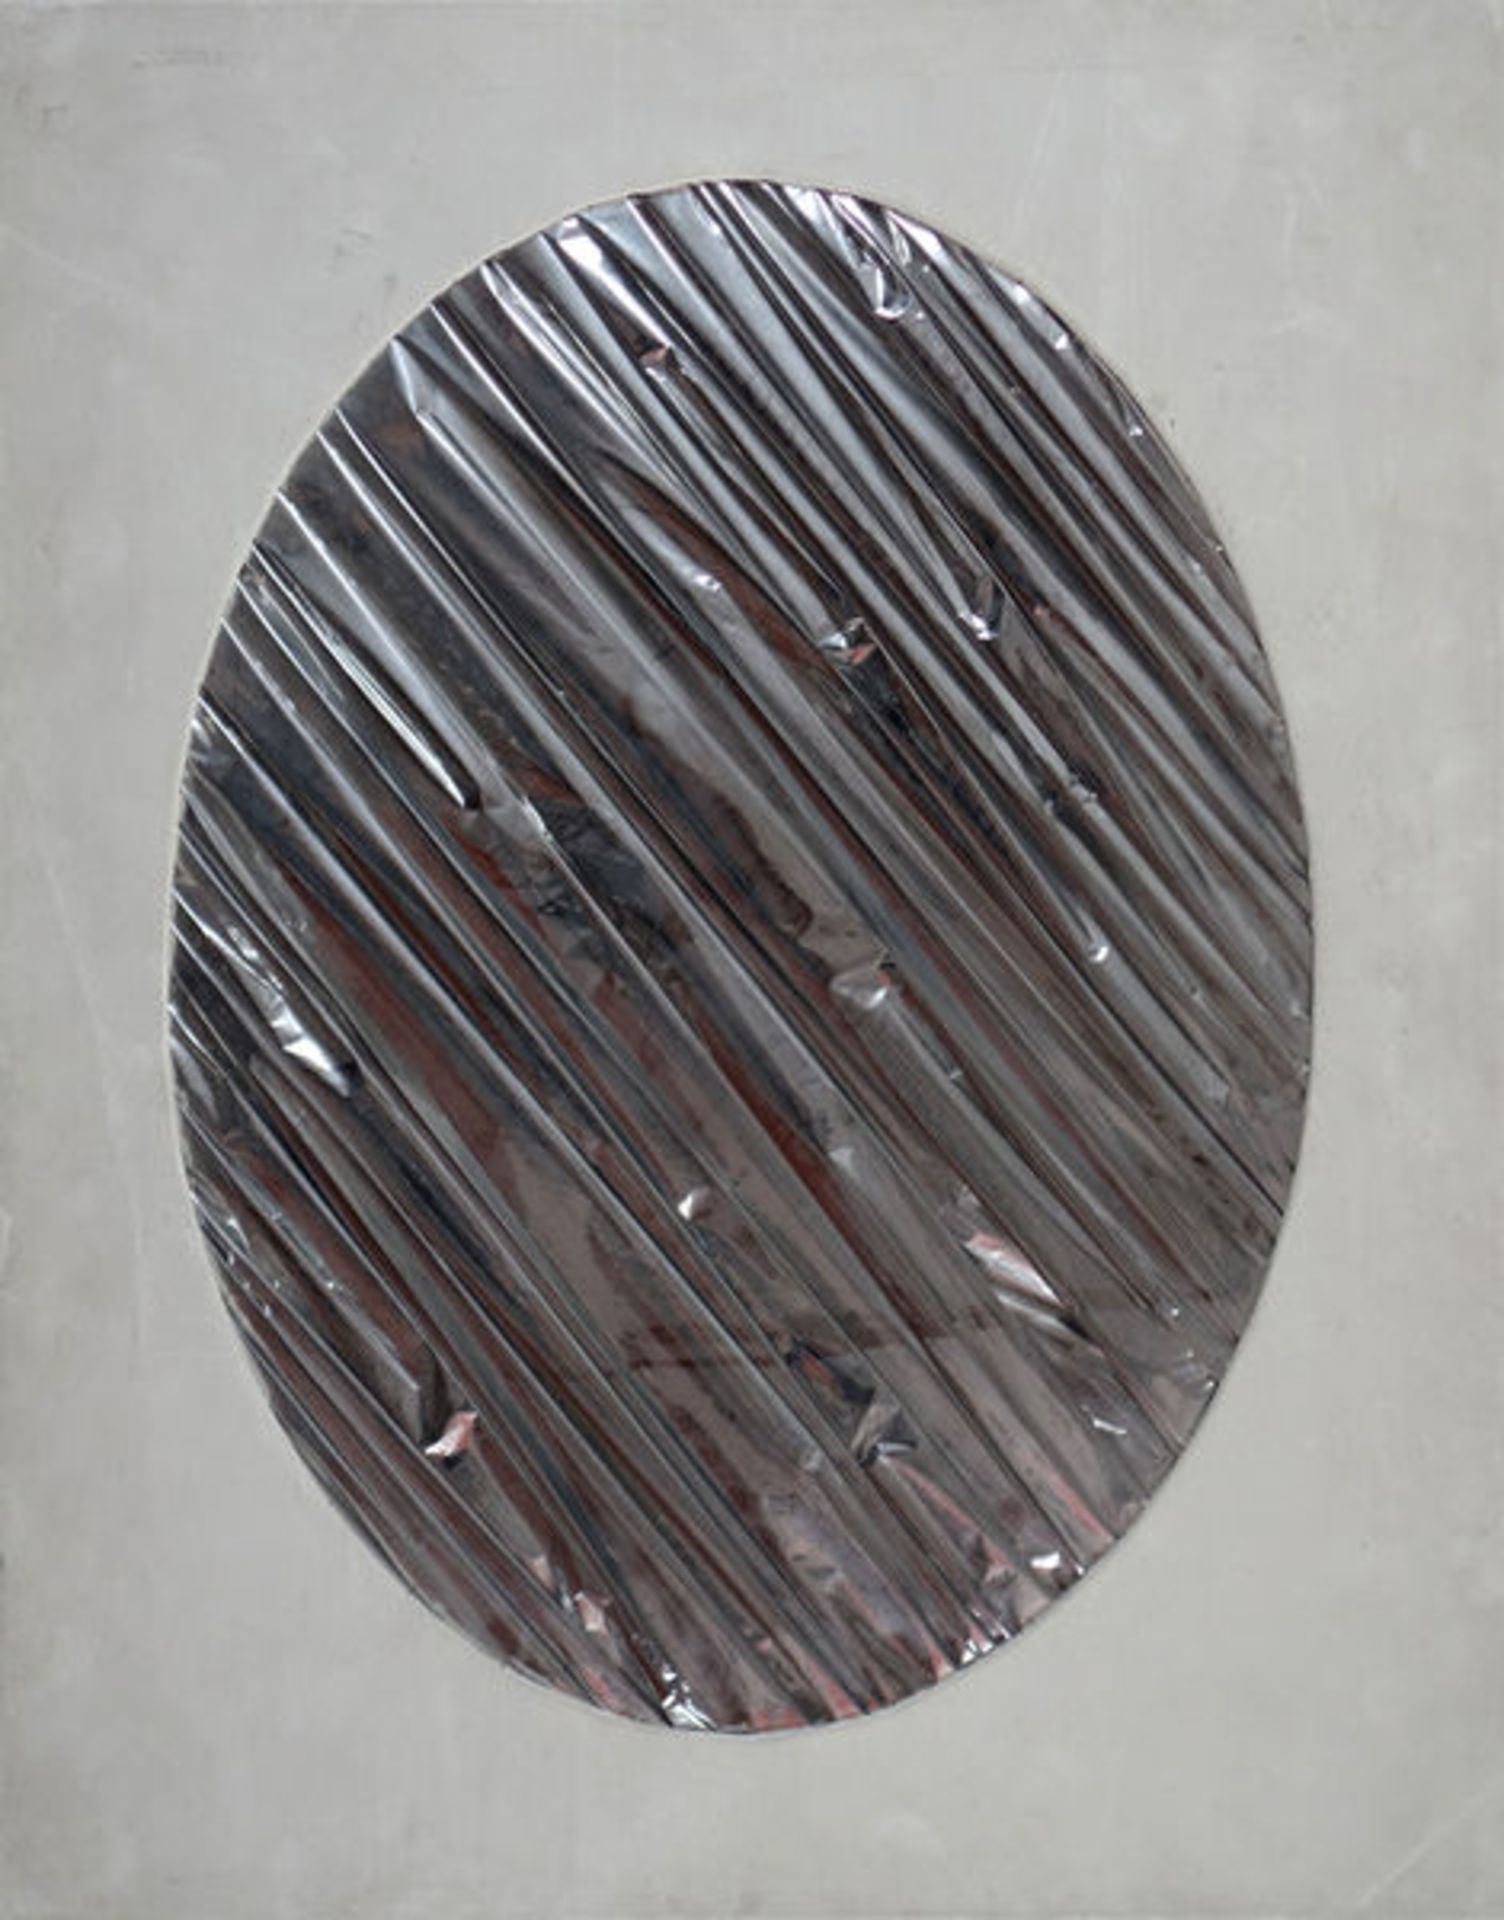 Goepfert, HermannOhne Titel (1971)Kassette mit Multiple, aus Silberpapier gefaltet, oval in